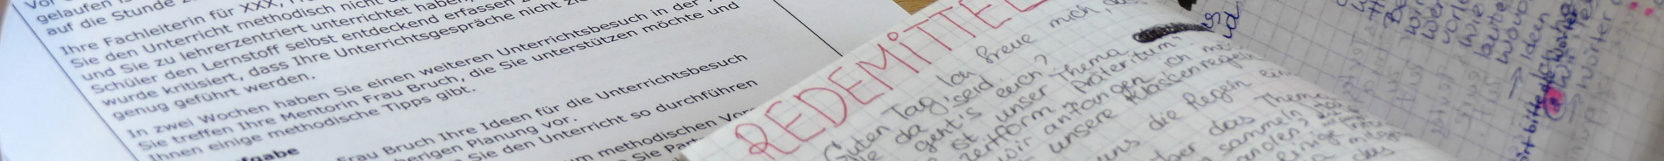 Handgeschriebene Notizen mit Redemitteln für den Deutschsprachkurs für ausländische Lehrkräfte